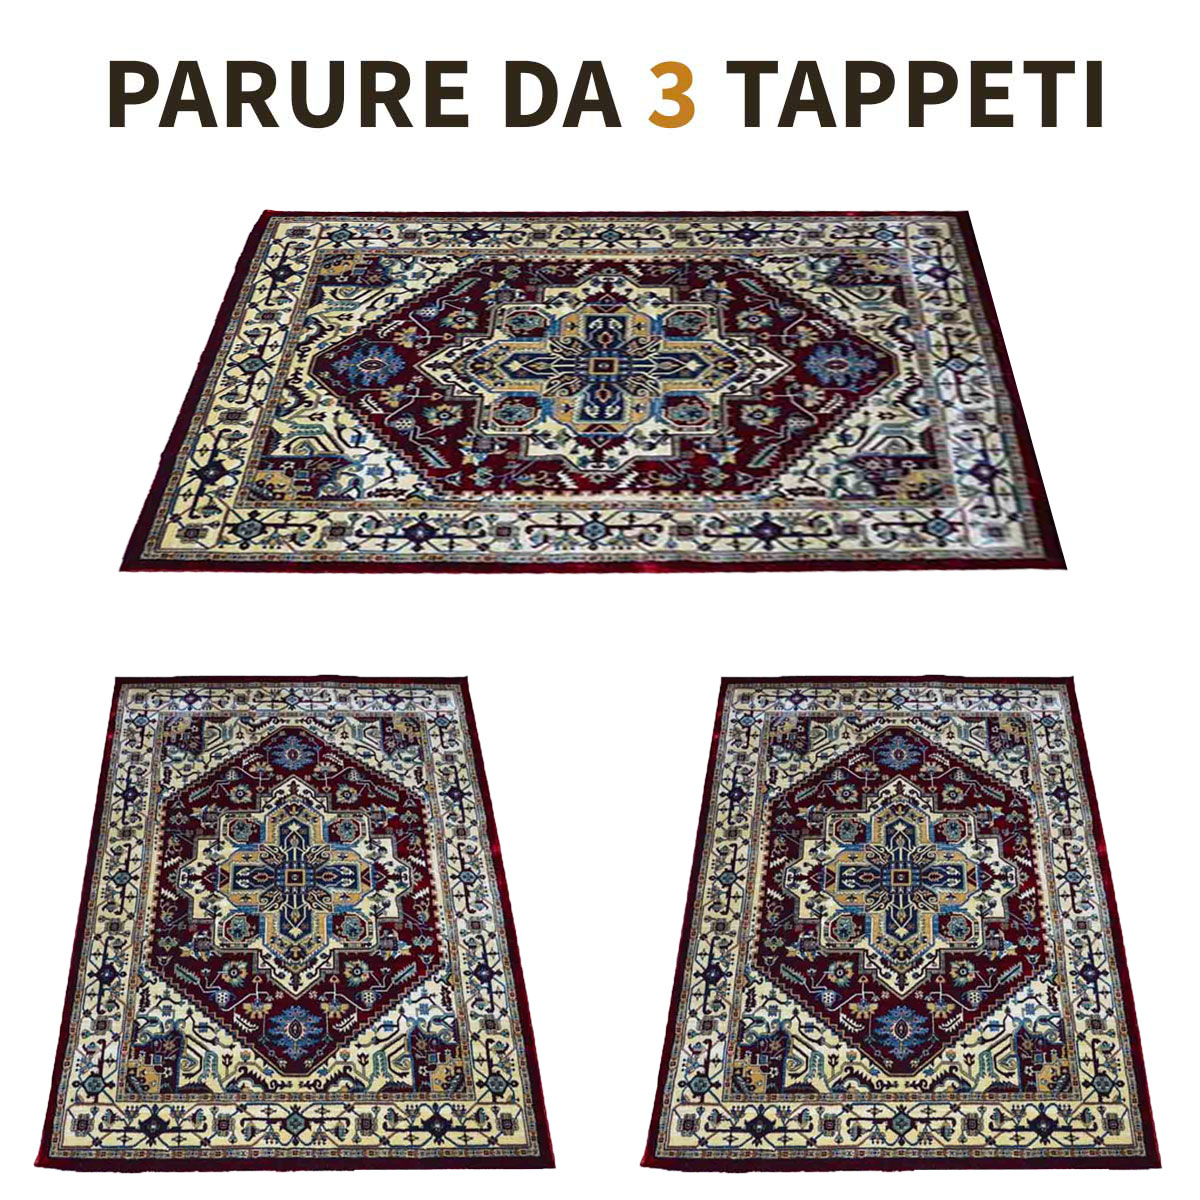 Parure 3 Tappeti art. 1535A - Turotti Abbigliamento